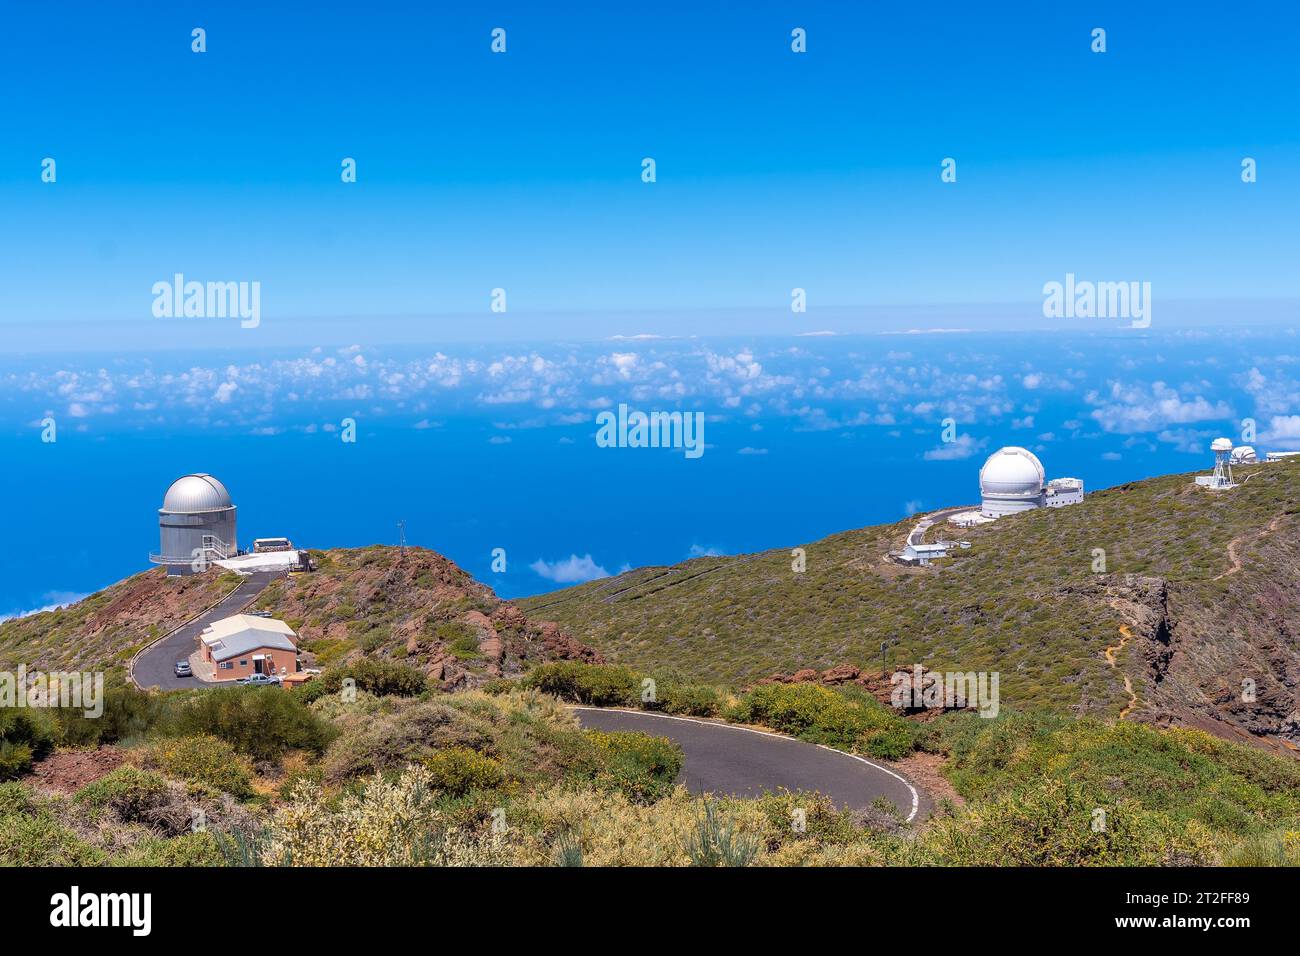 Télescopes du sommet de Roque de los Muchachos au sommet de la Caldera de Taburiente, la Palma, îles Canaries. Espagne Banque D'Images